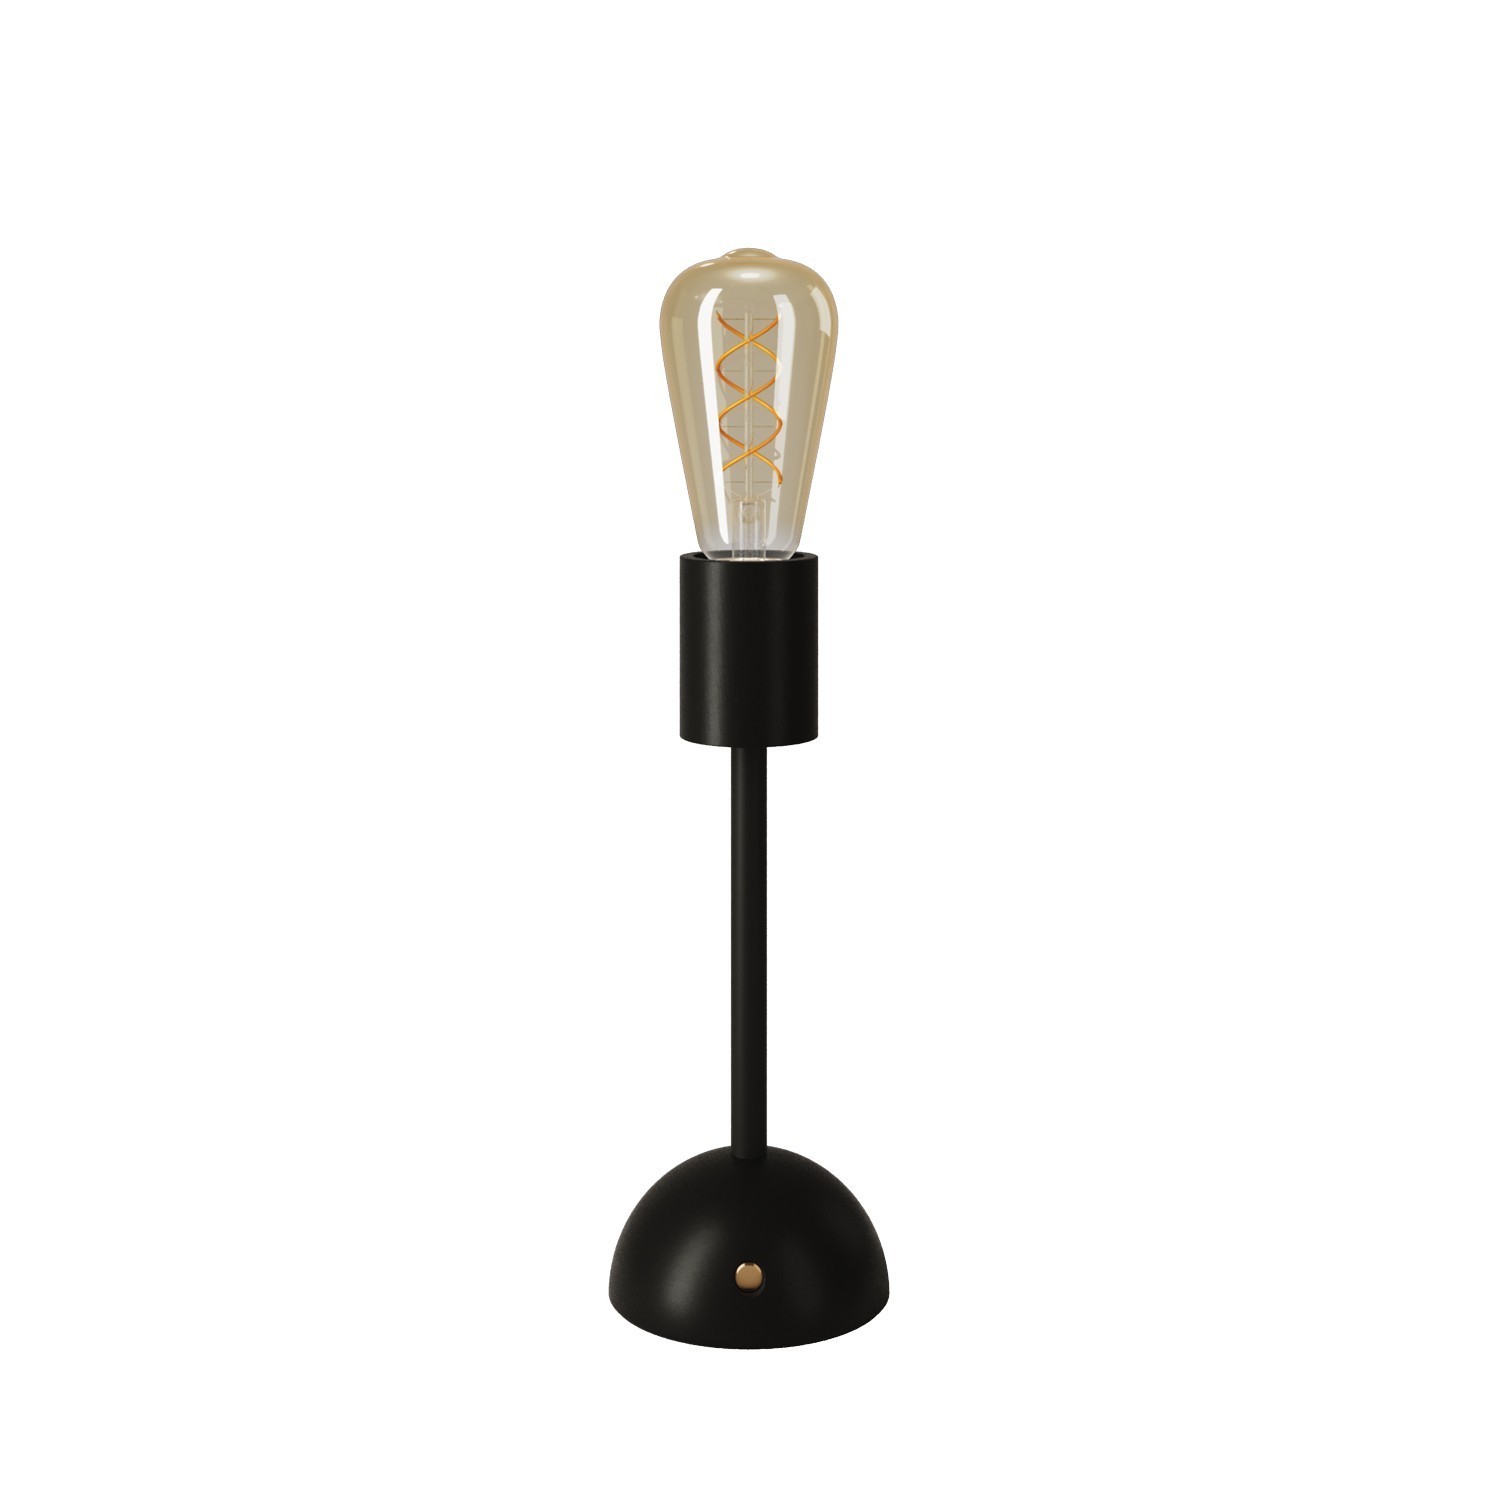 Tragbare, wiederaufladbare Leuchte Cabless02 mit goldfarbener Edison Glühbirne